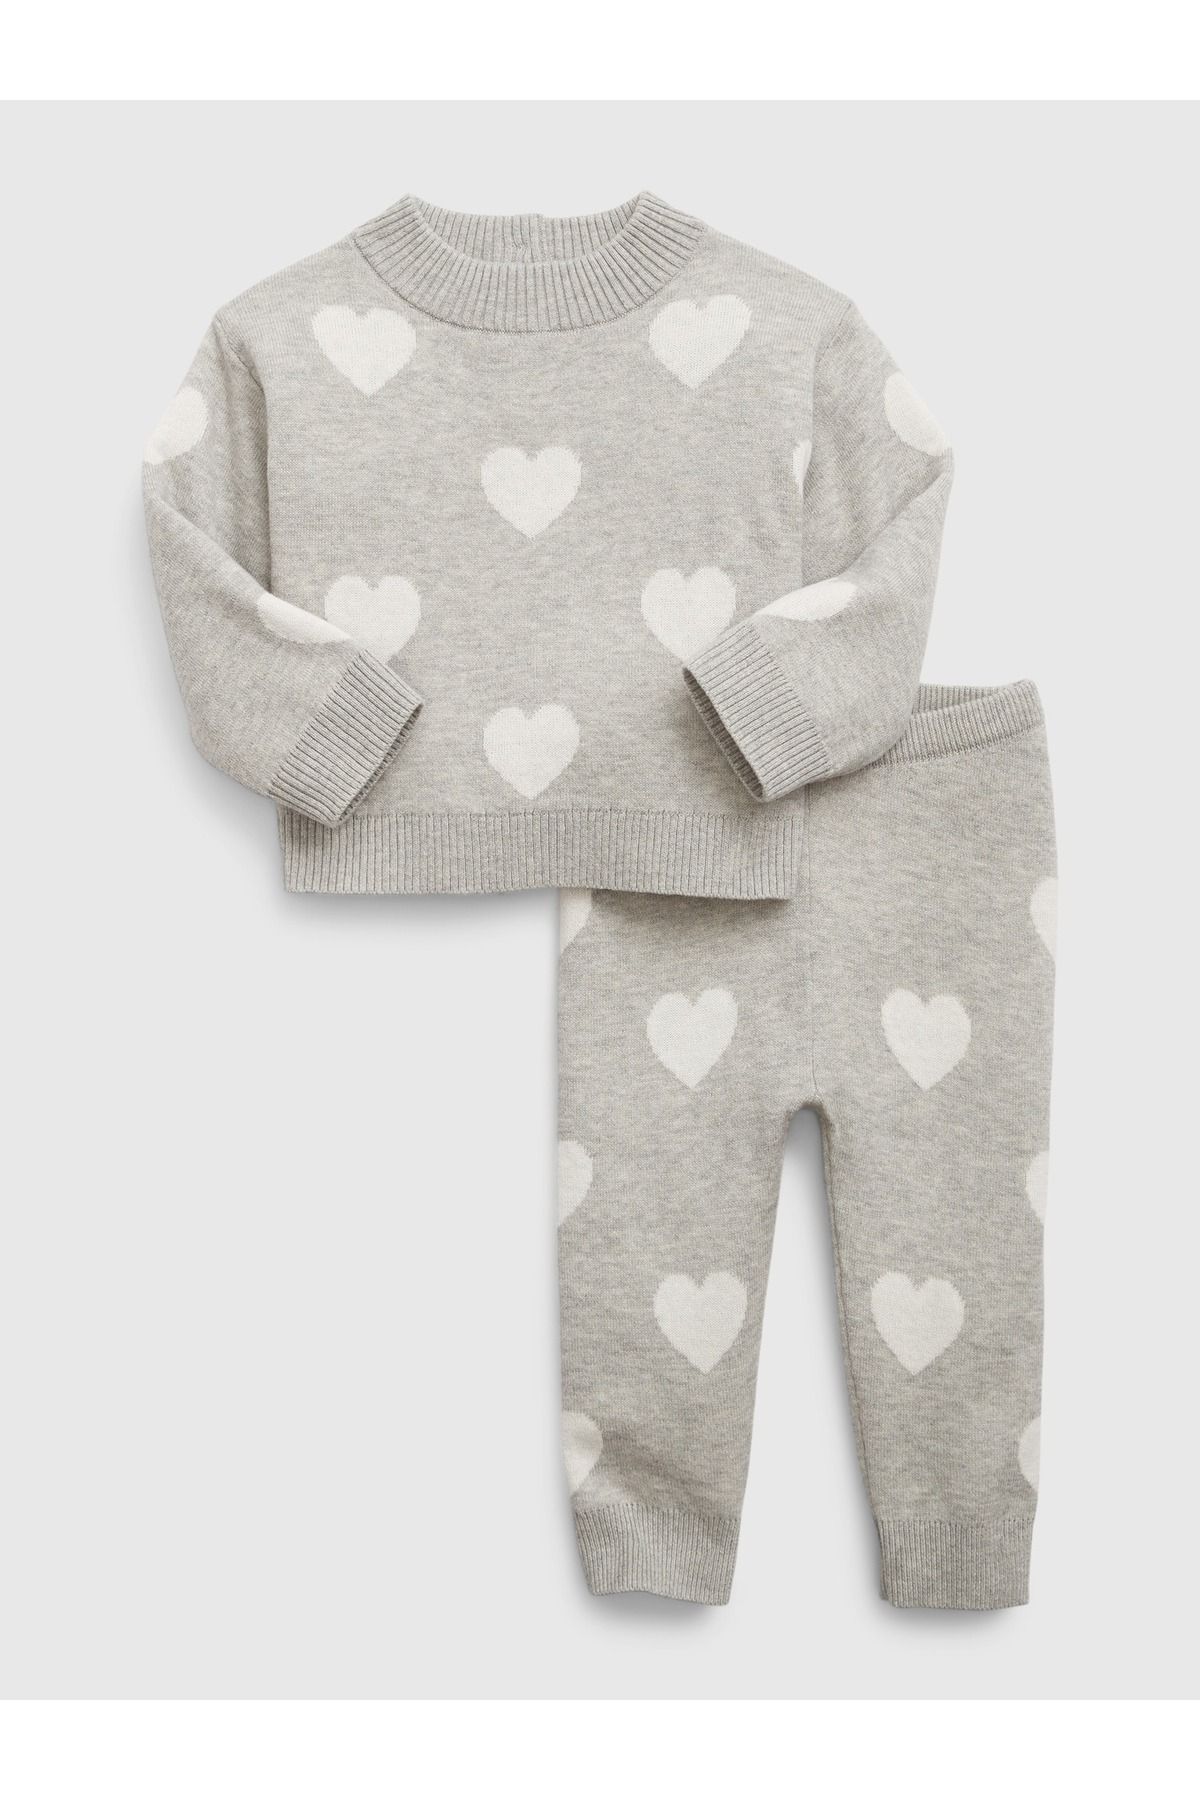 GAP Kız Bebek Gri Kalp Desenli Outfit Set